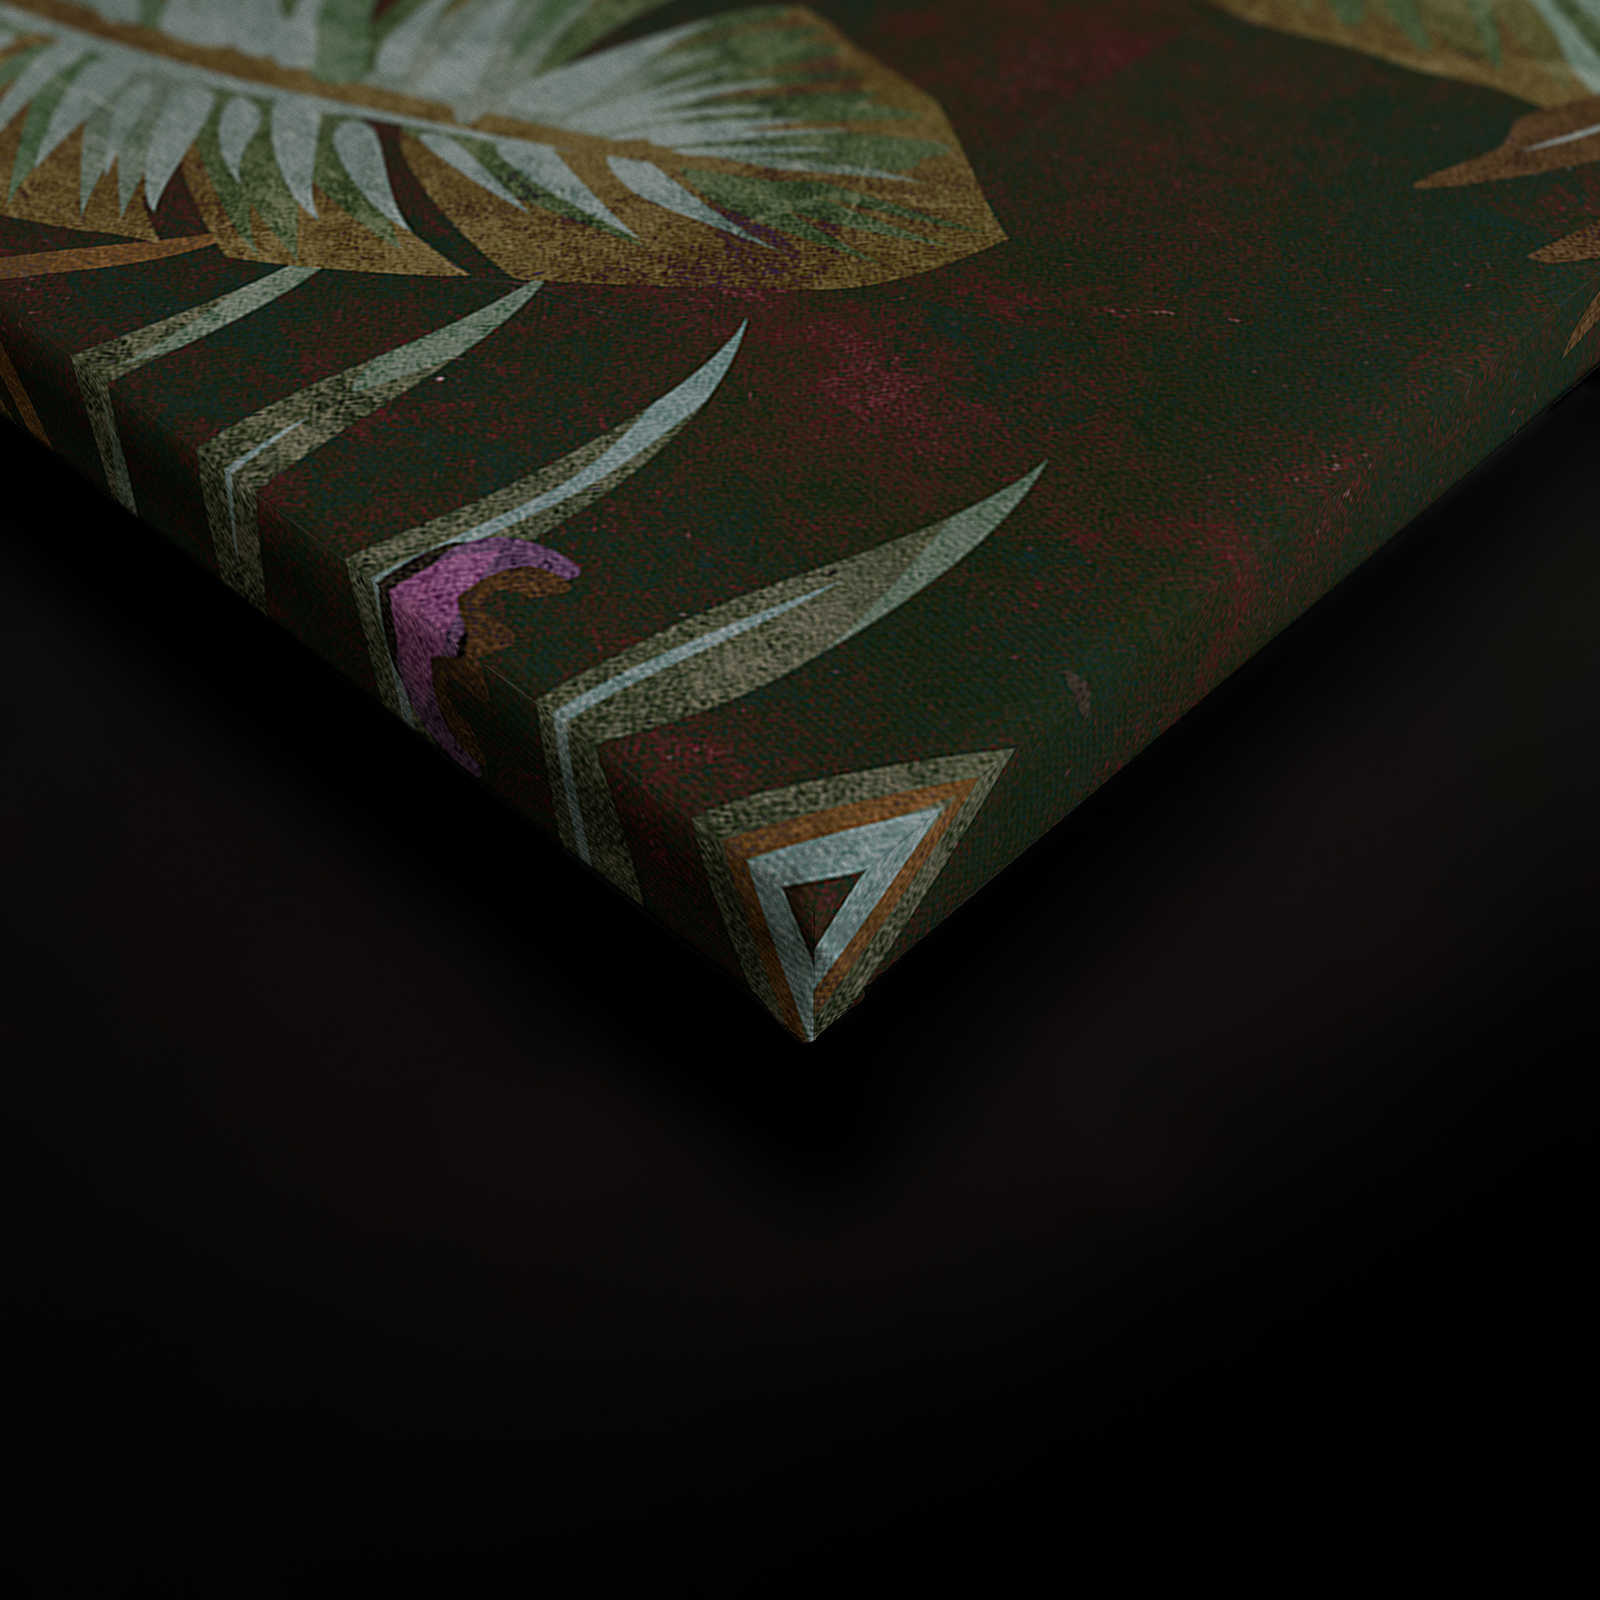             Tropicana 1 - Quadro su tela della giungla con foglie di banano e felci - 0,90 m x 0,60 m
        